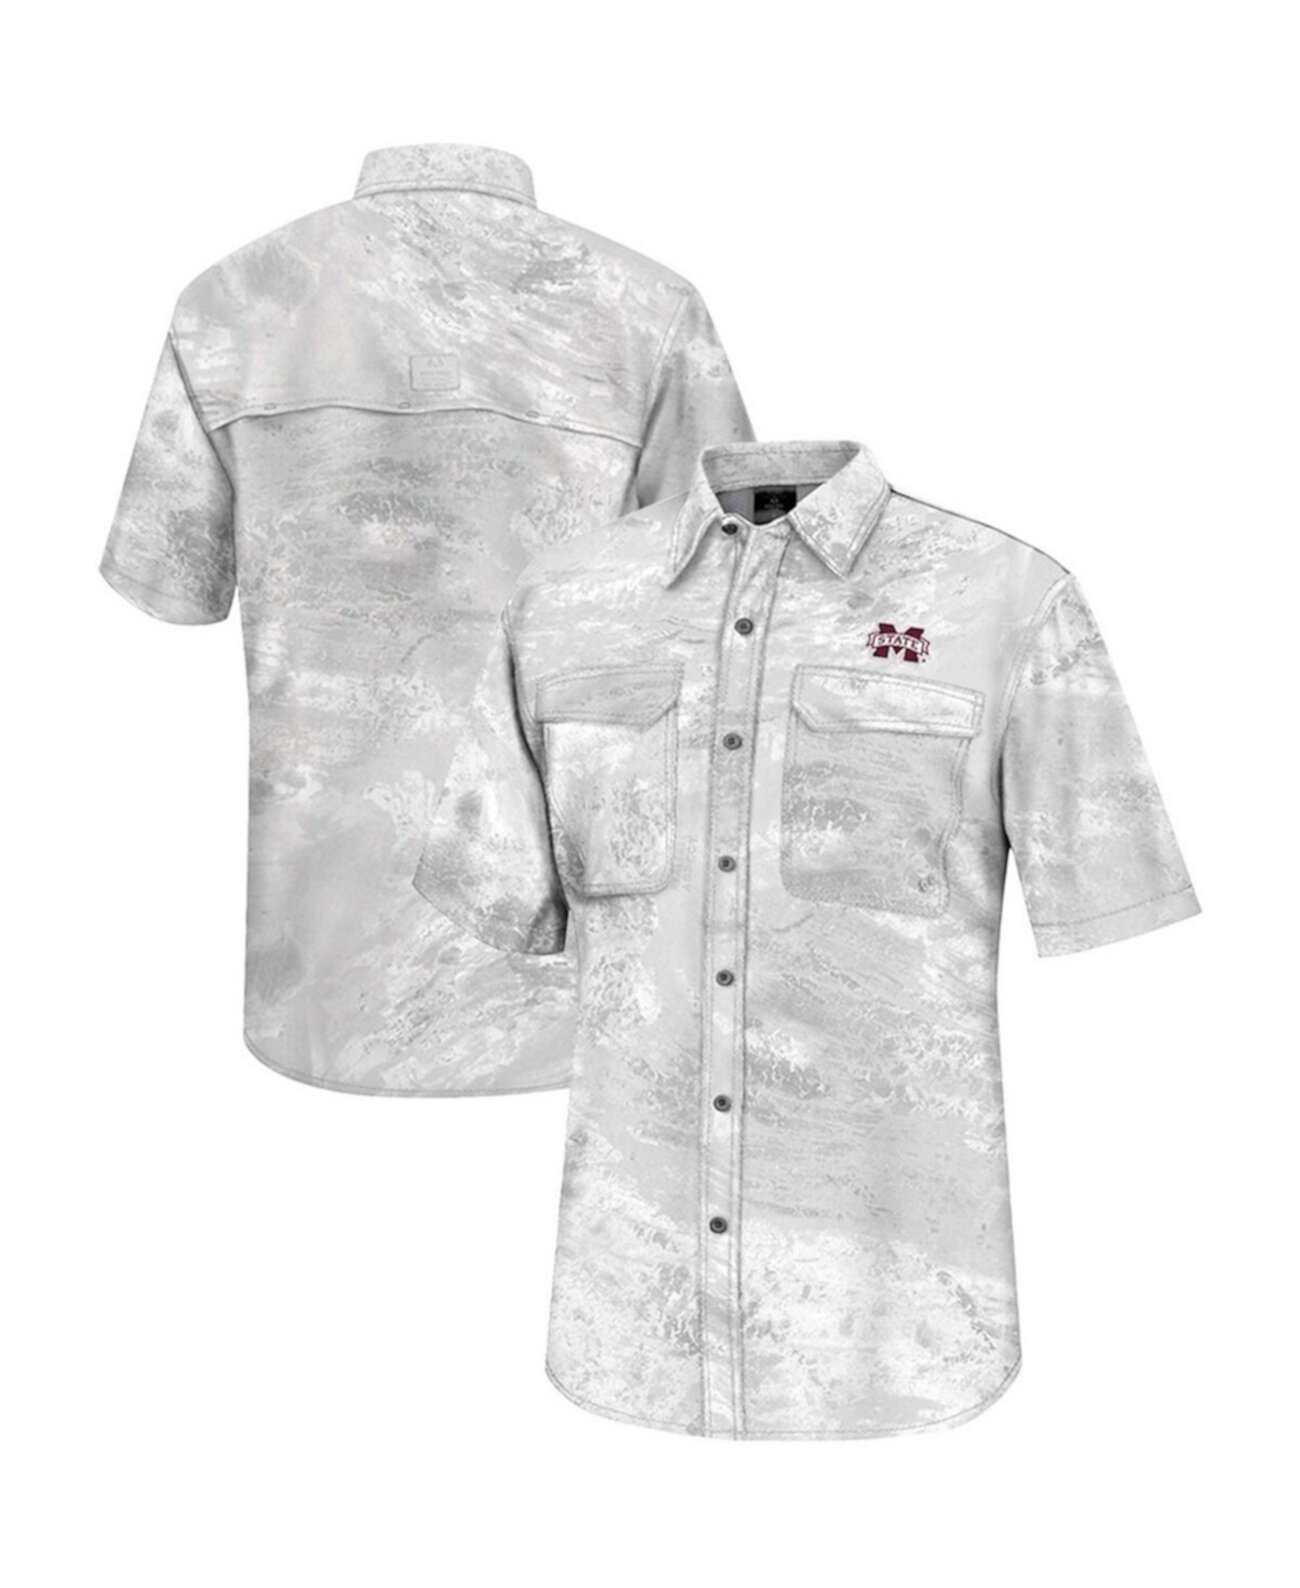 Мужская белая рубашка для рыбалки на всех пуговицах с изображением настоящего дерева Aspect Charter Mississippi State Bulldogs Colosseum